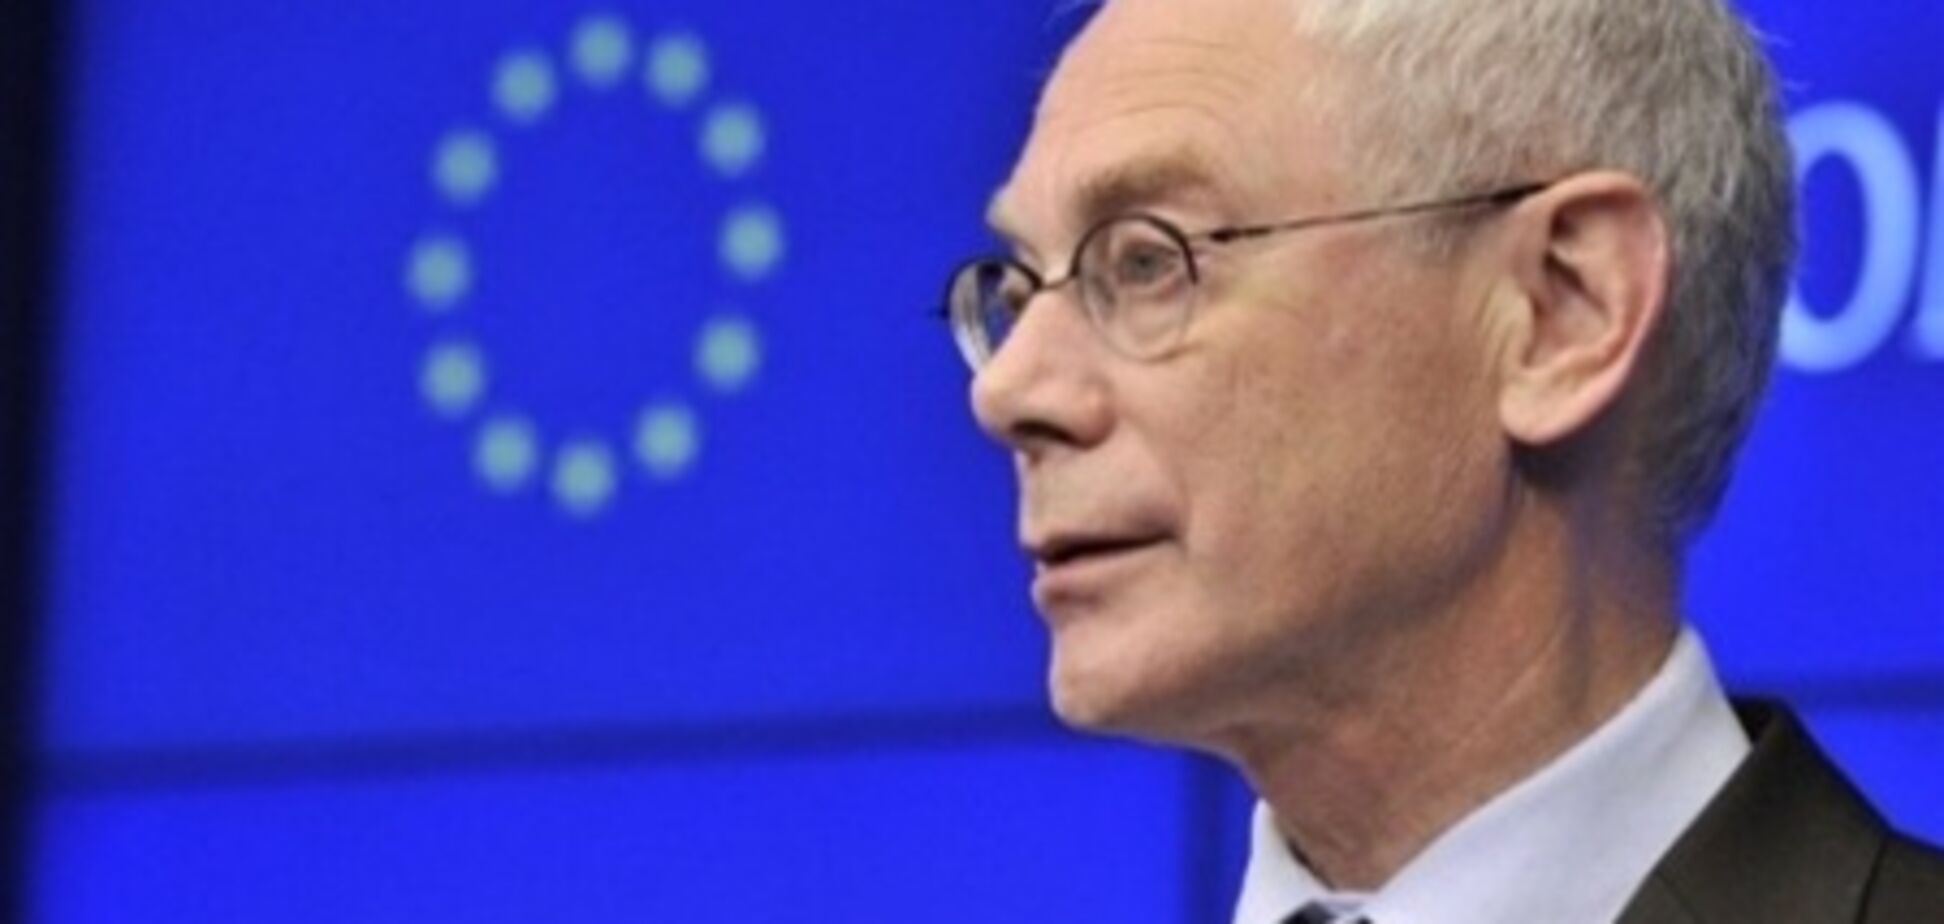 ЕС не будет бойкотировать Евро-2012 - Ван Ромпей